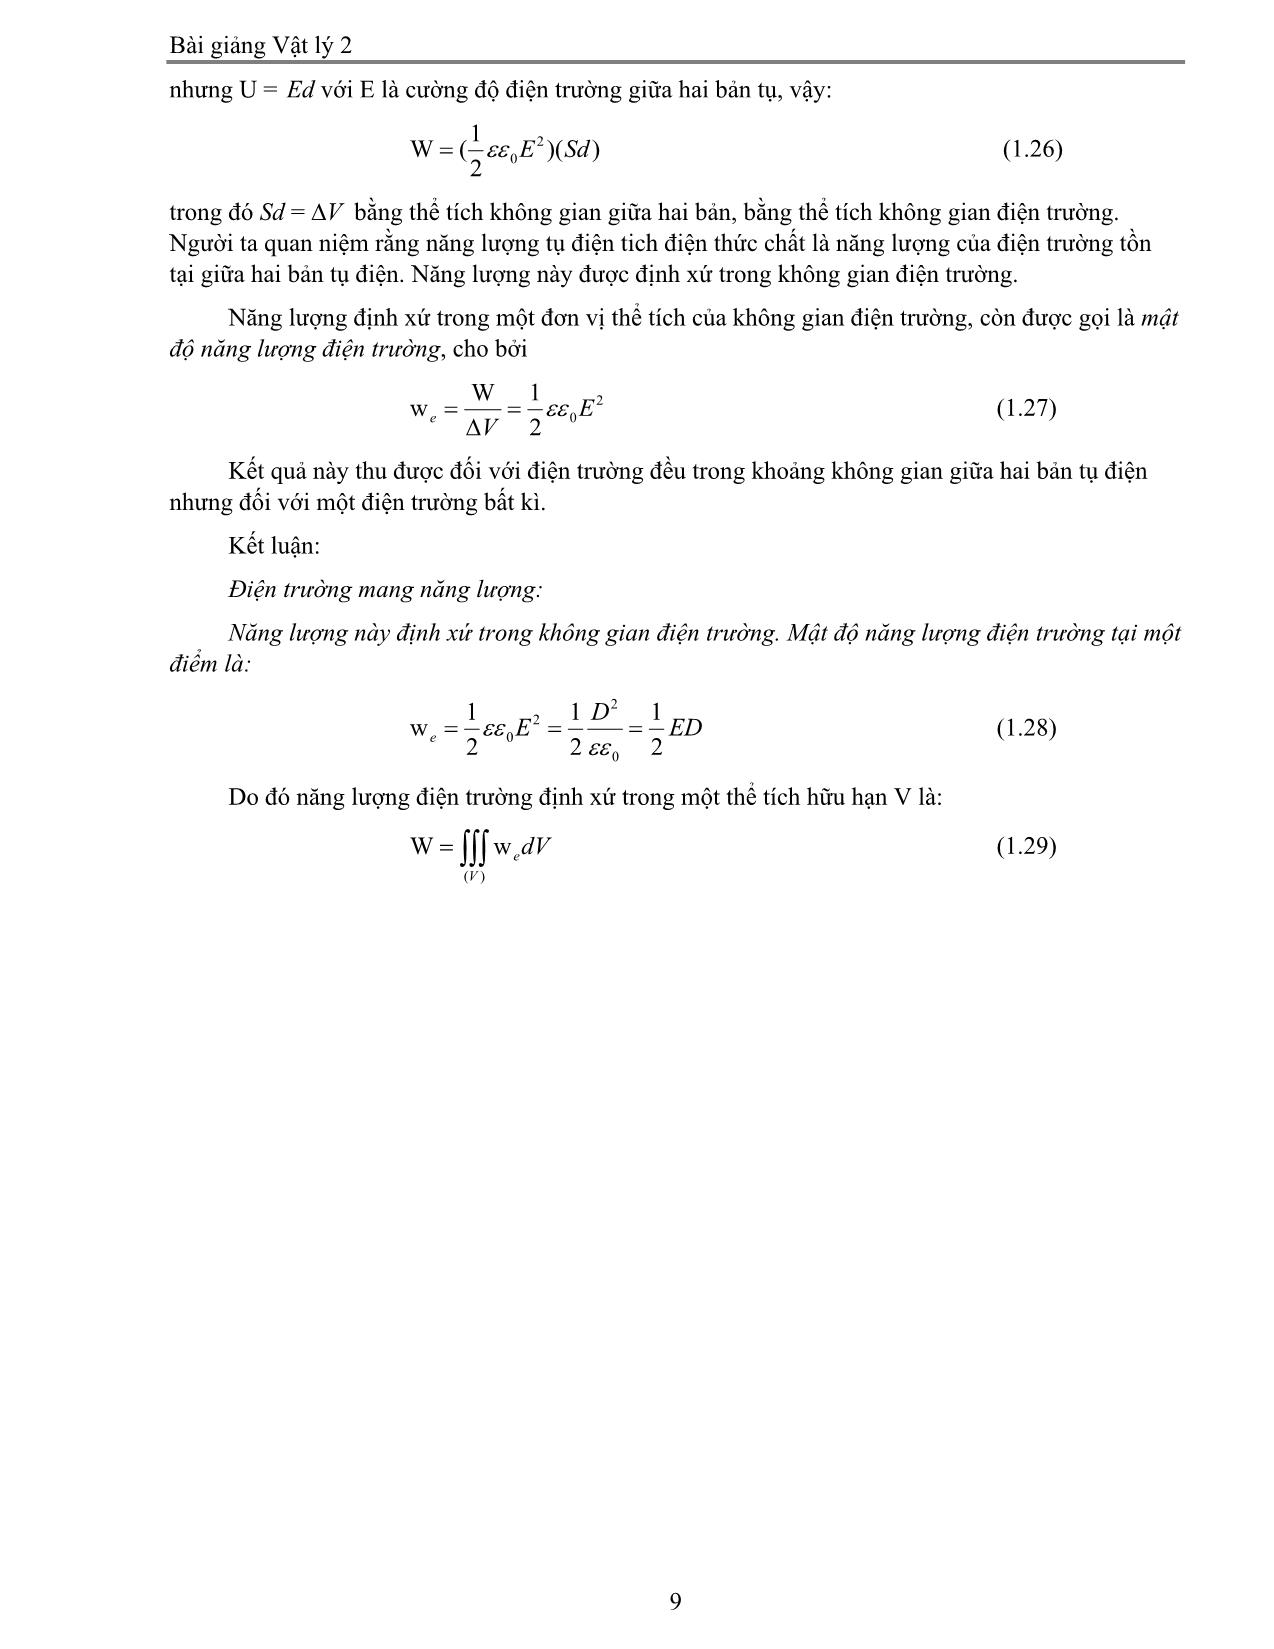 Giáo trình Vật lý 2 trang 9